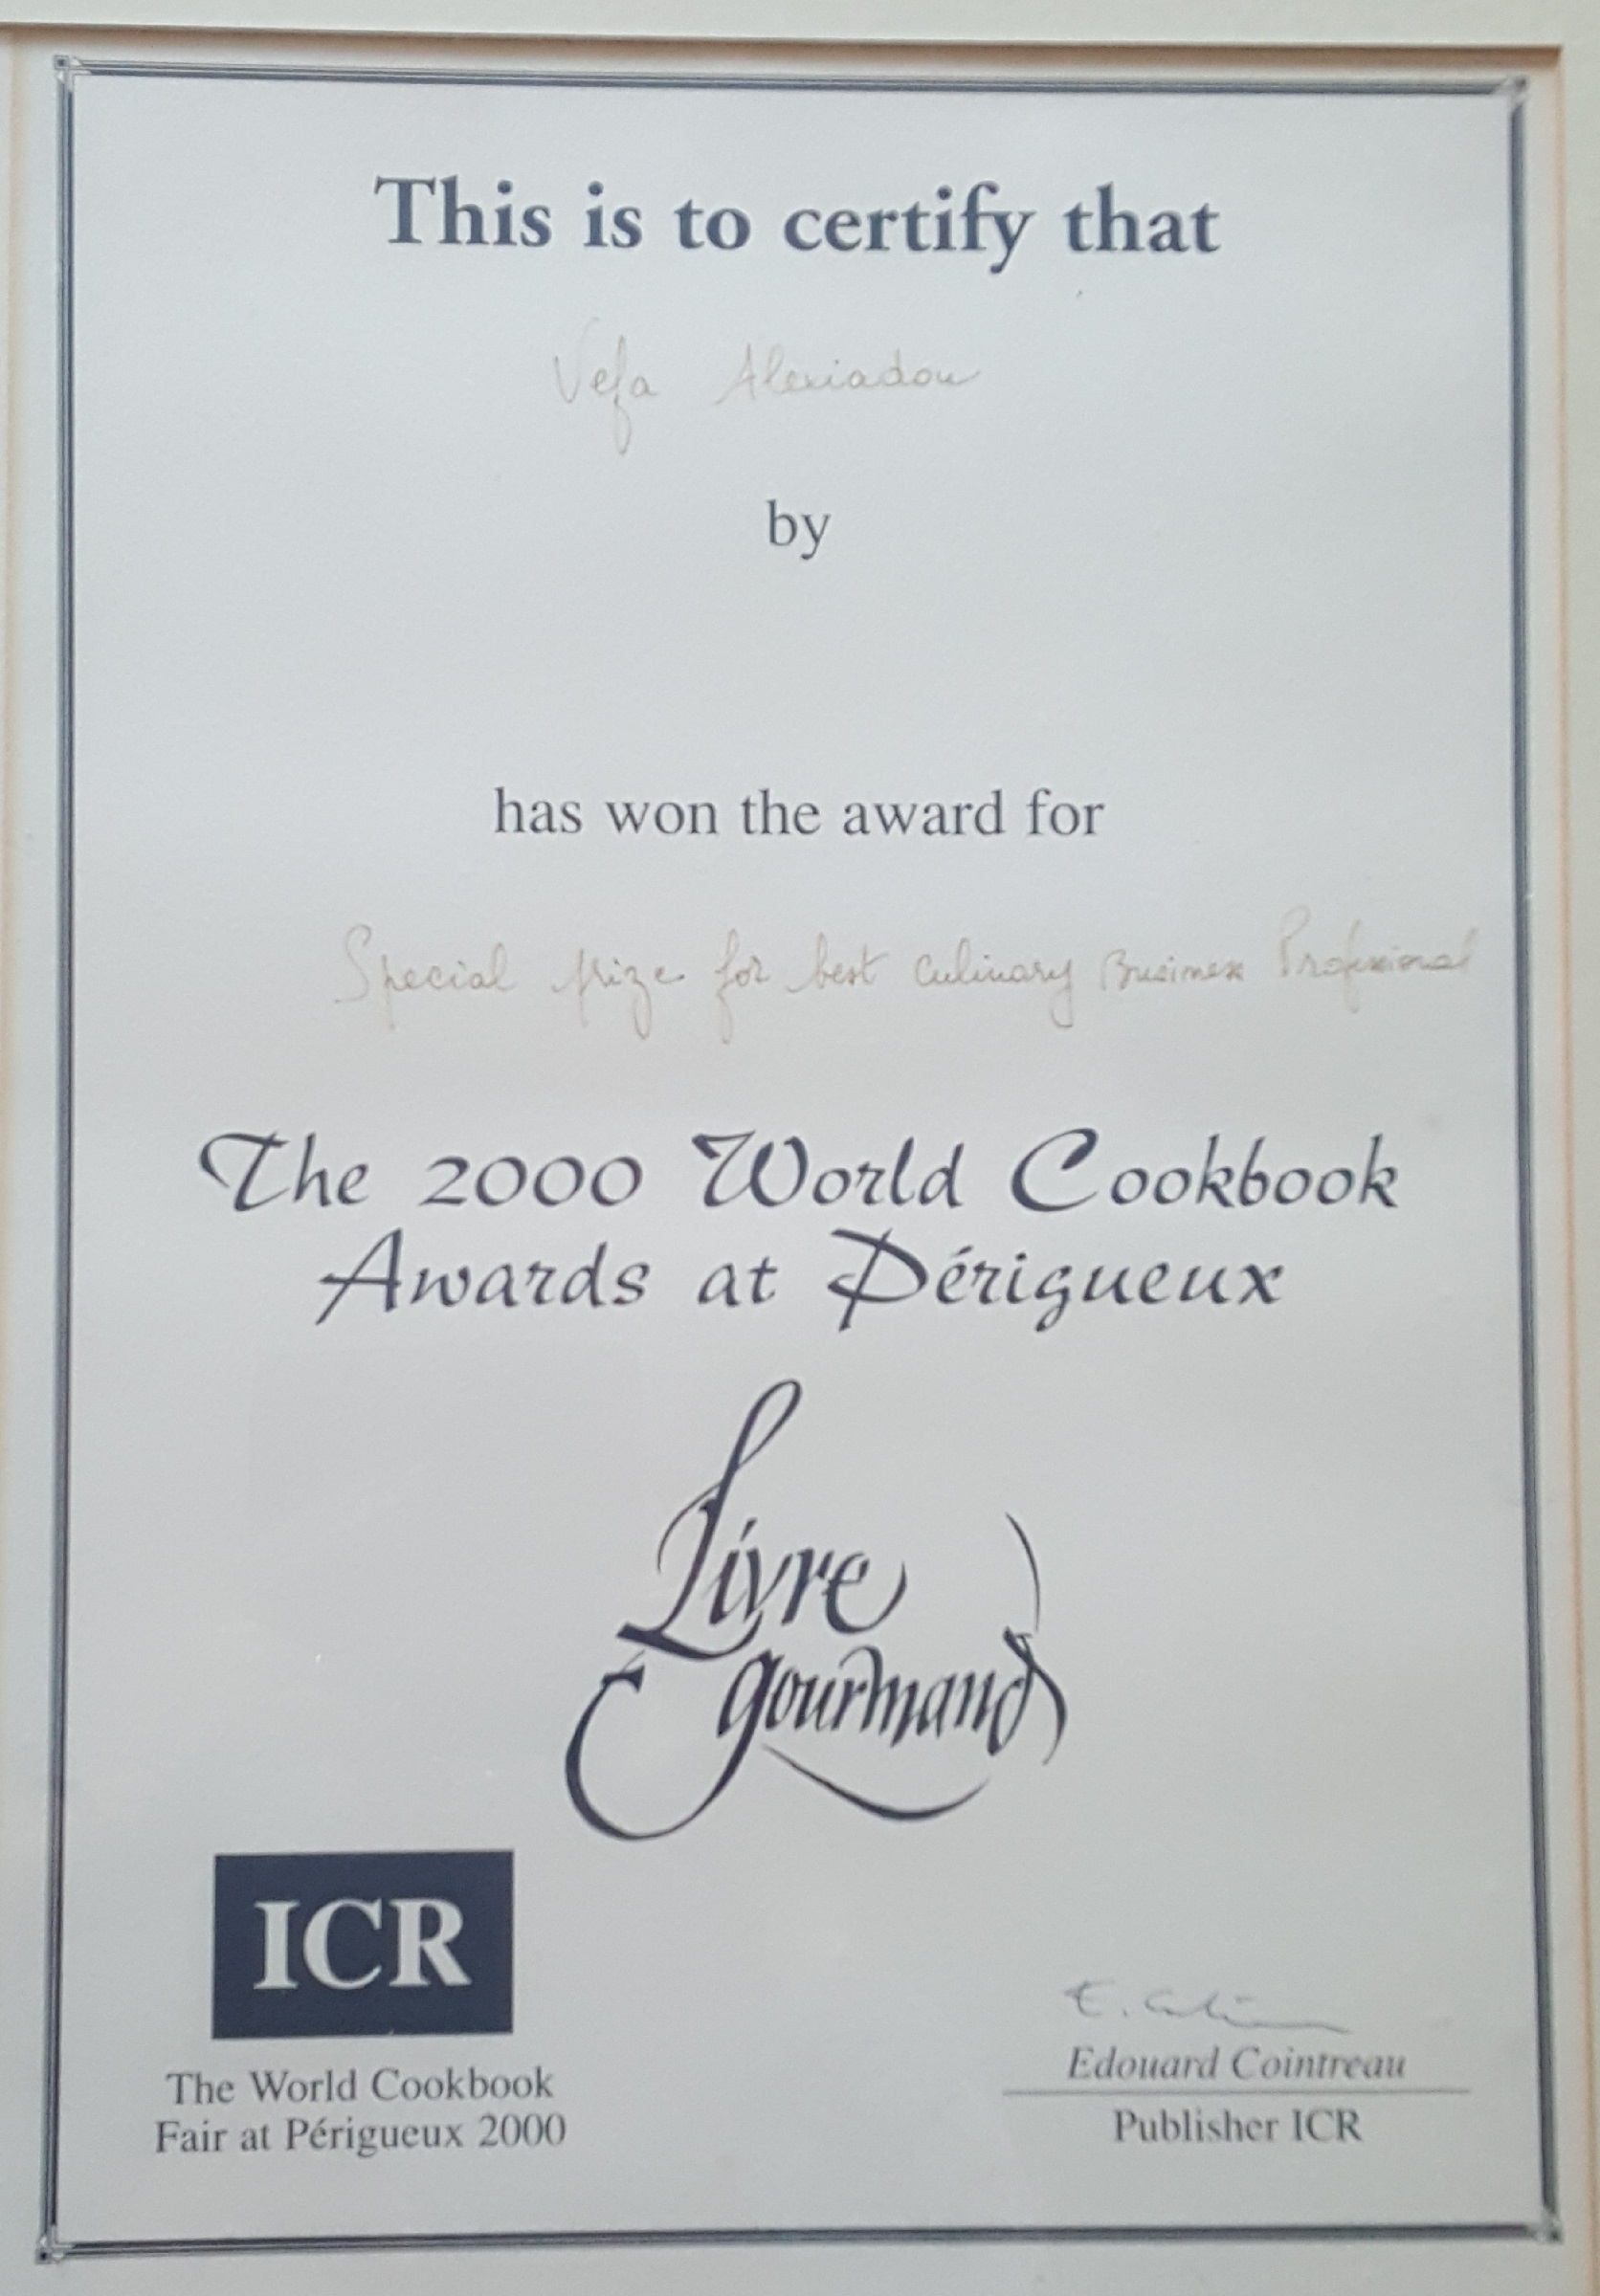 ΒΕΦΑ ΑΛΕΞΙΑΔΟΥ Livres Gourmand 2000 Perigueux Special Prize for Best Culinary Business Professional vefaalexiadou cookbooks & blog vefaalexiadou.gr/